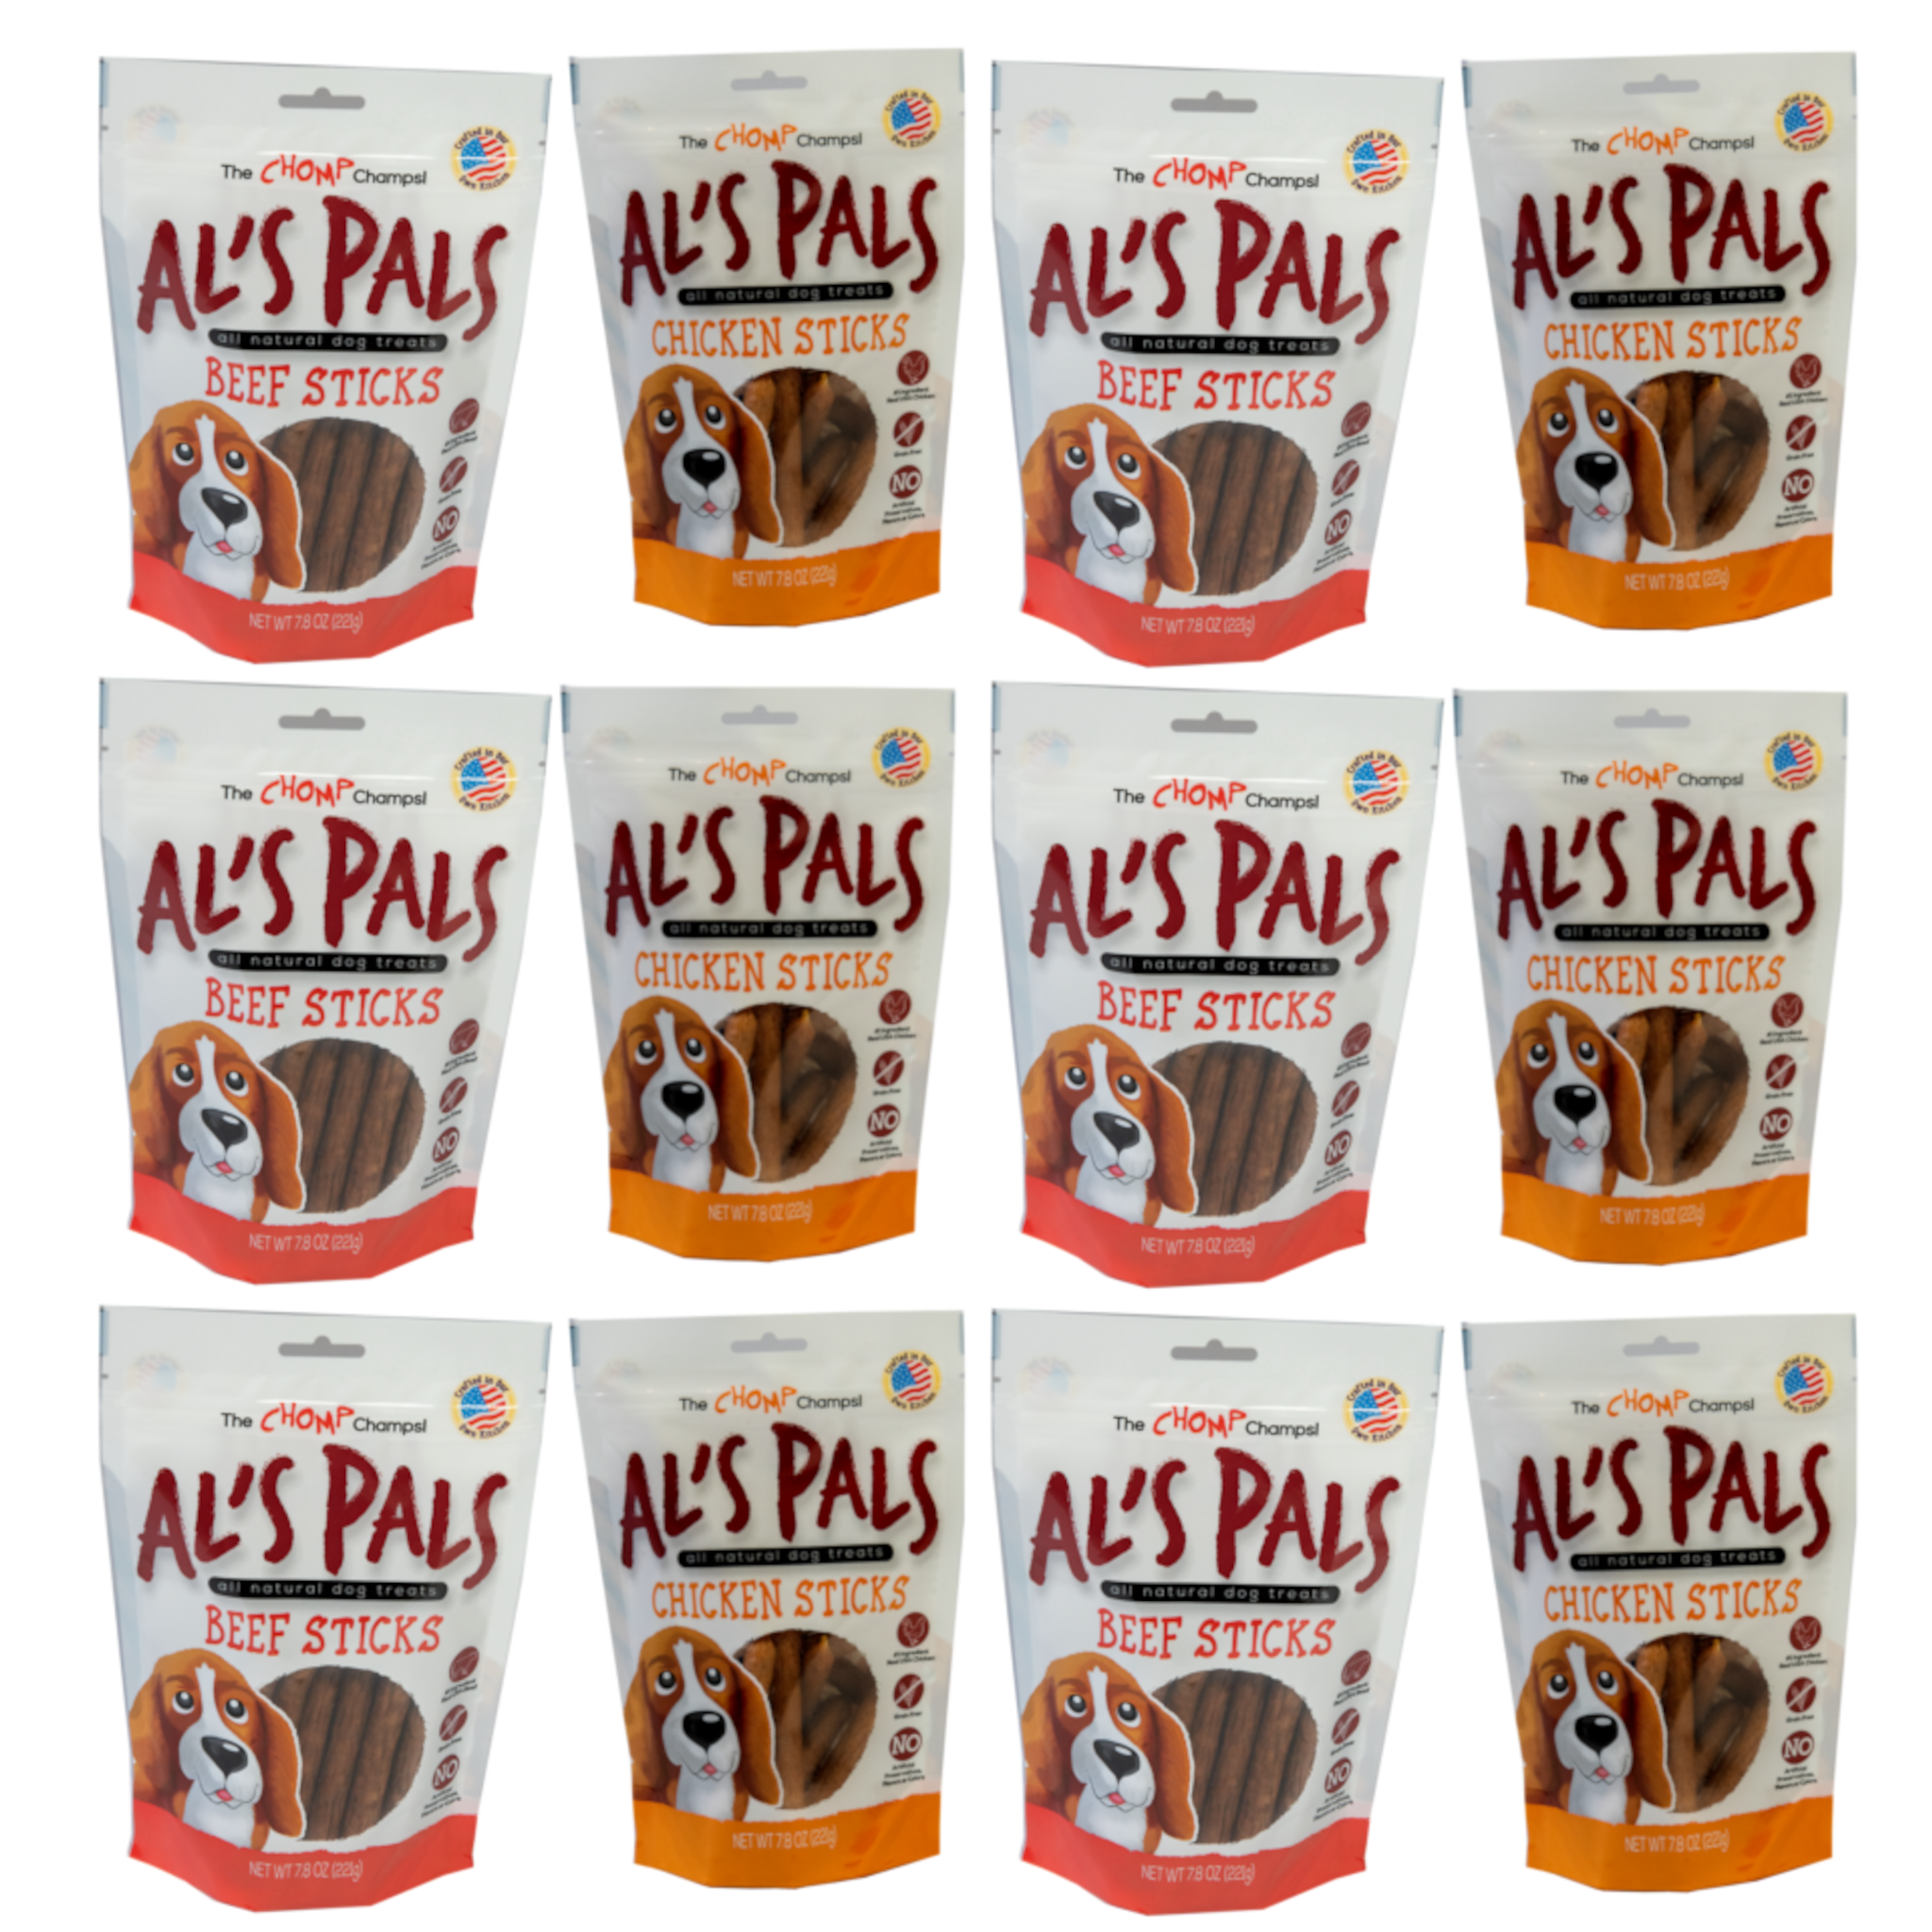 Al's Pals All Natural Dog Treats - Variety Pack